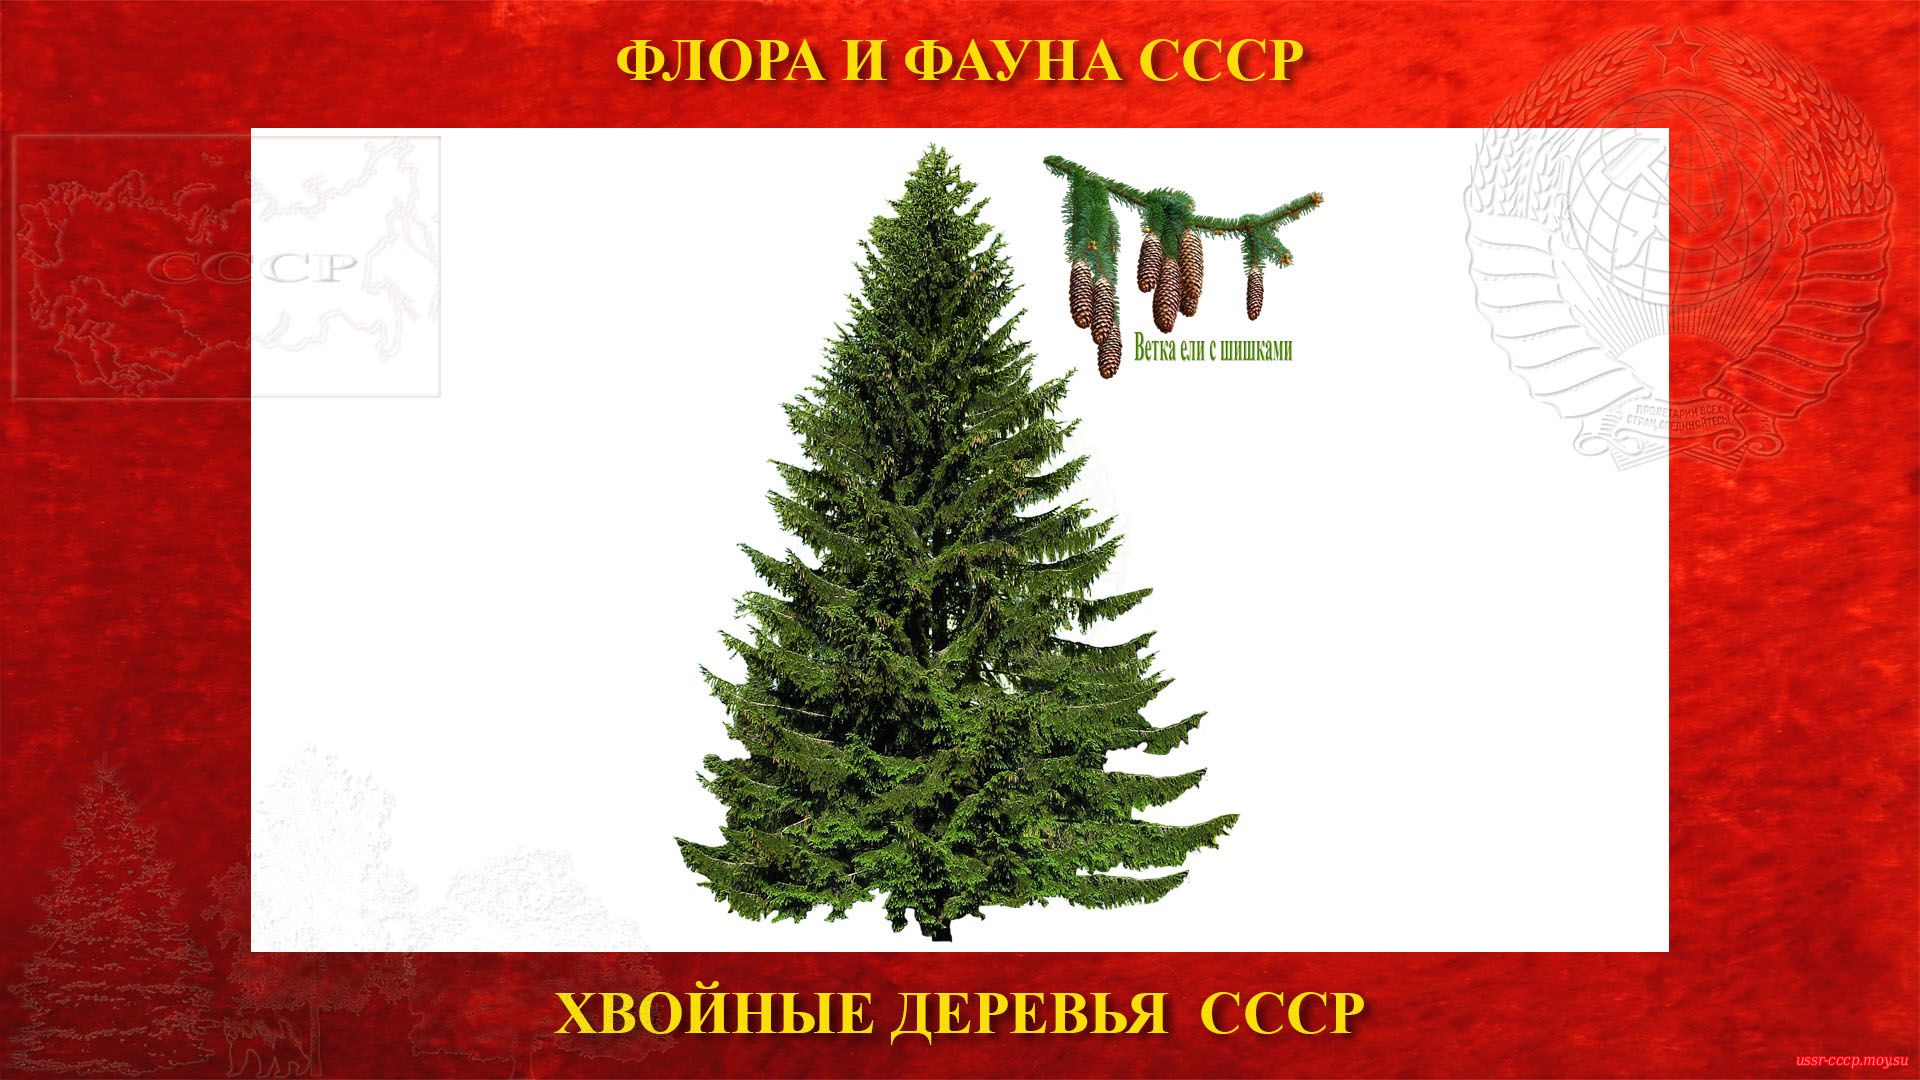 Ель — Хвойное дерево СССР (повествование)